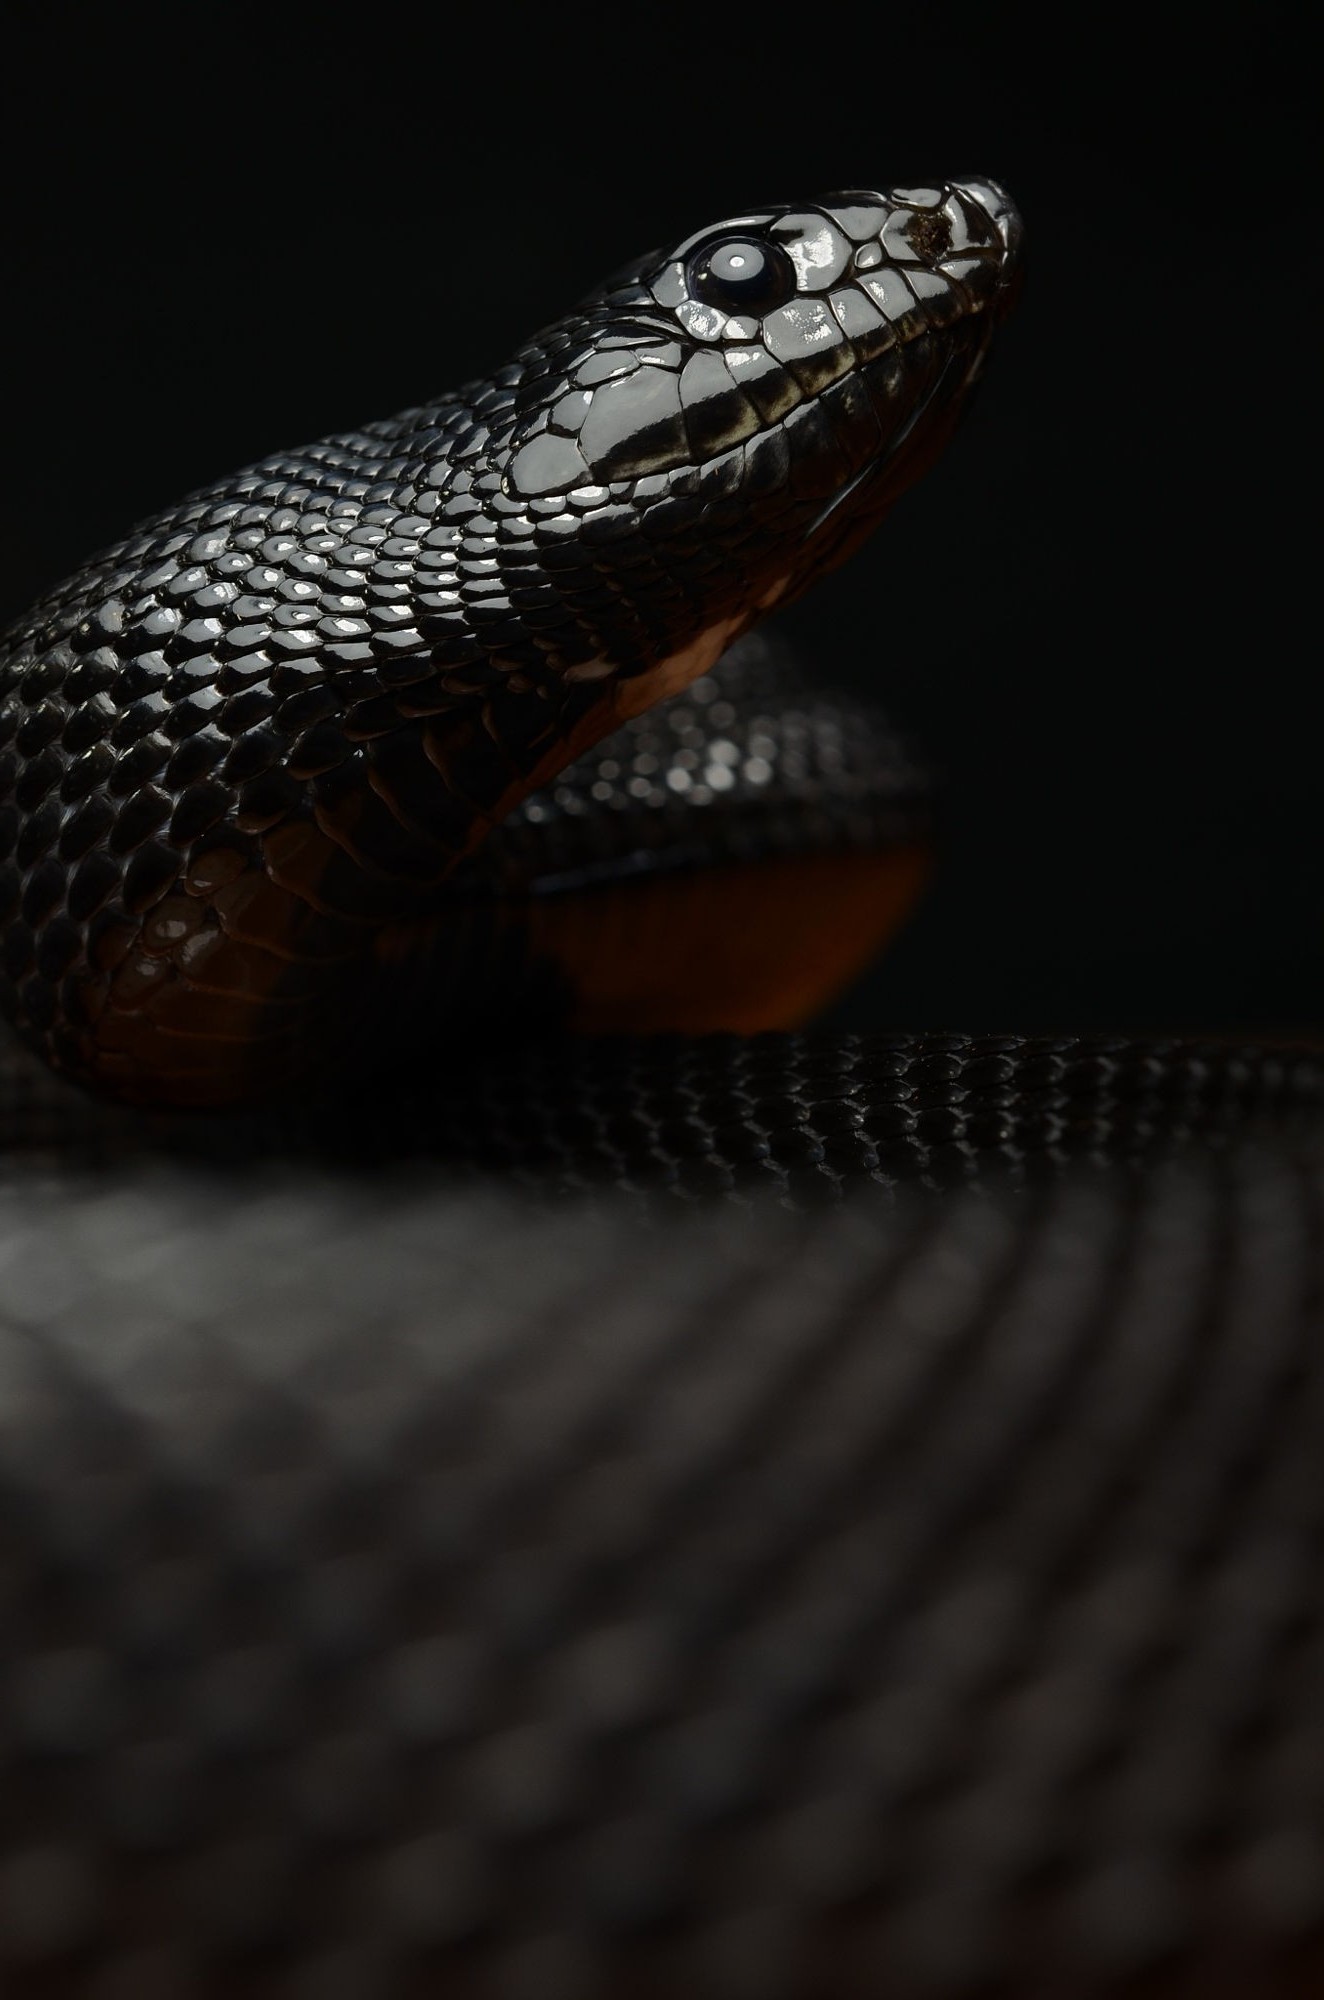 reptiles snake macro Wallpaper